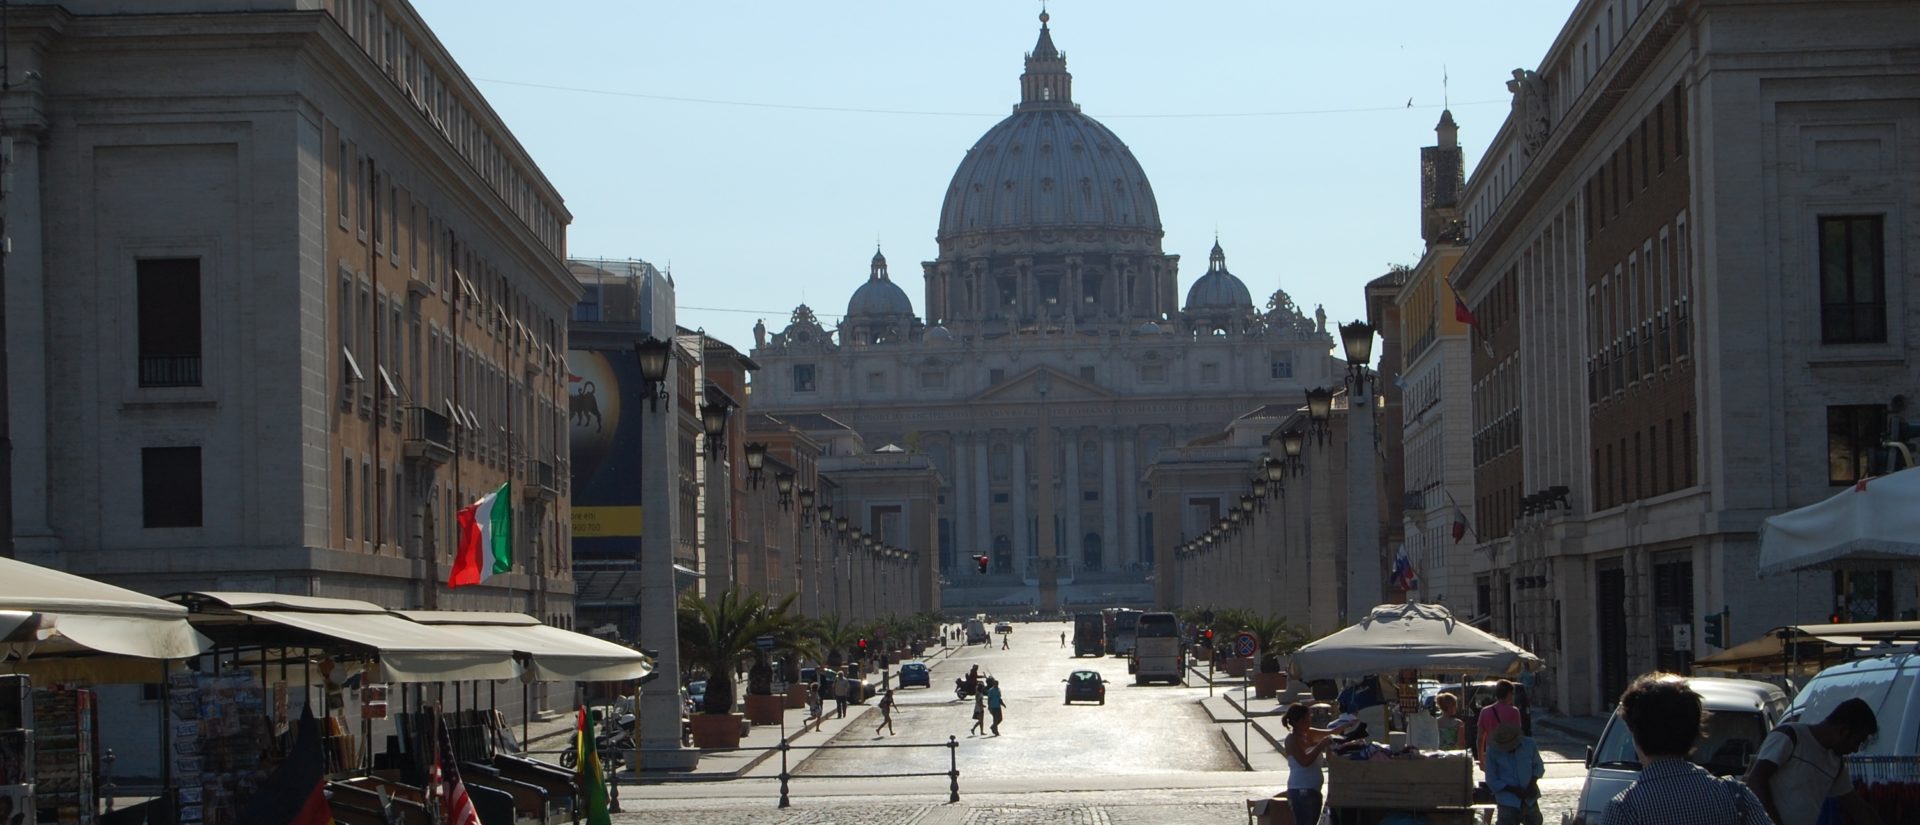 Le Vatican face à un déficit causé en partie par la pandémie| © Jacques Berset